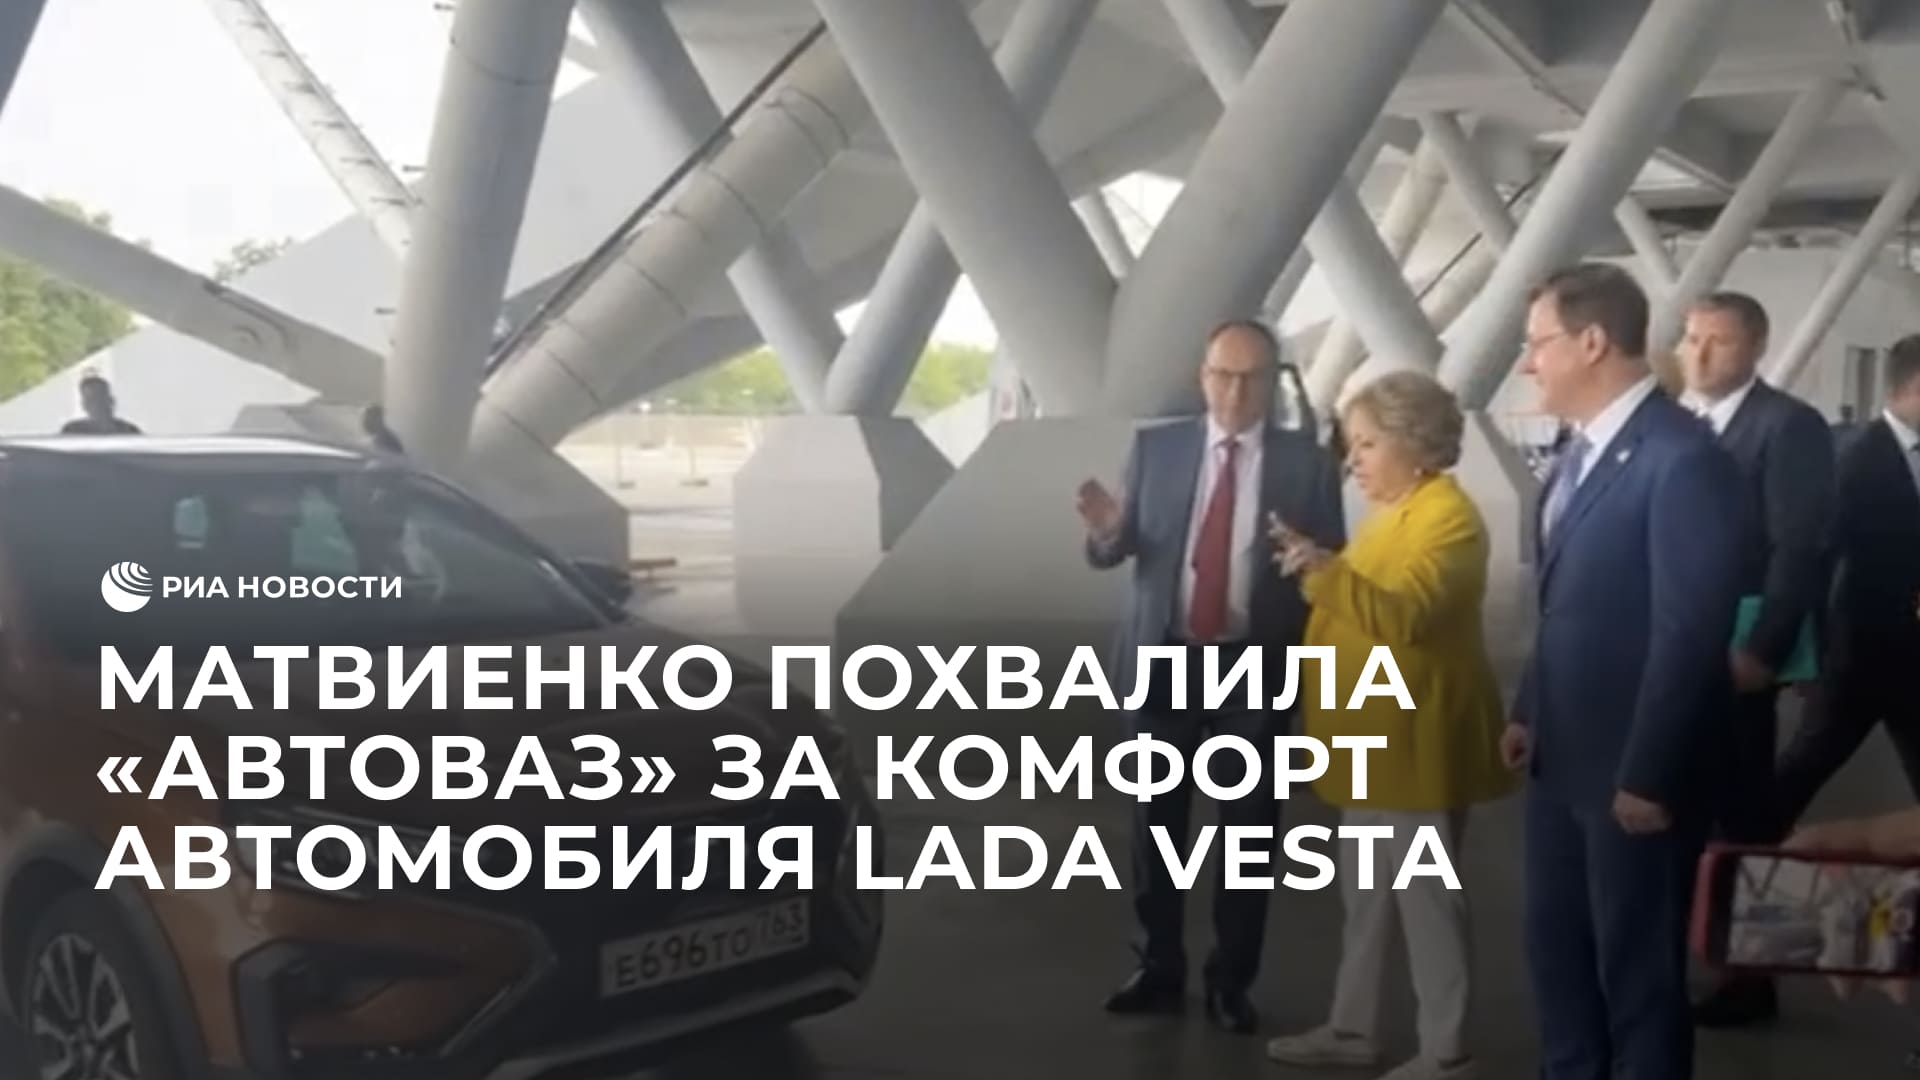 Матвиенко похвалила "АвтоВАЗ" за комфорт автомобиля Lada Vesta